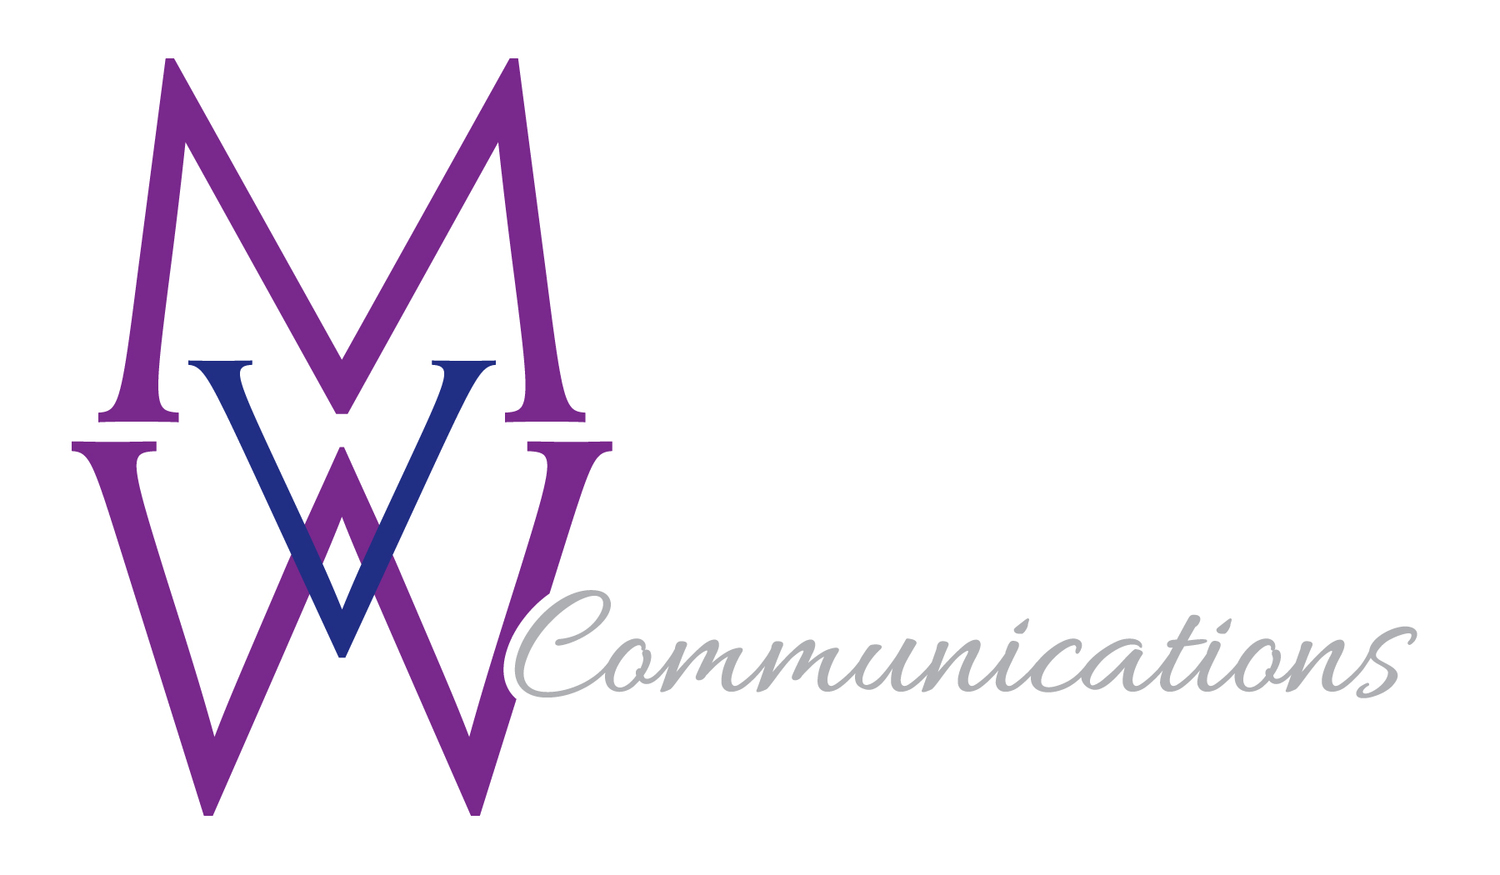 MVW Communications